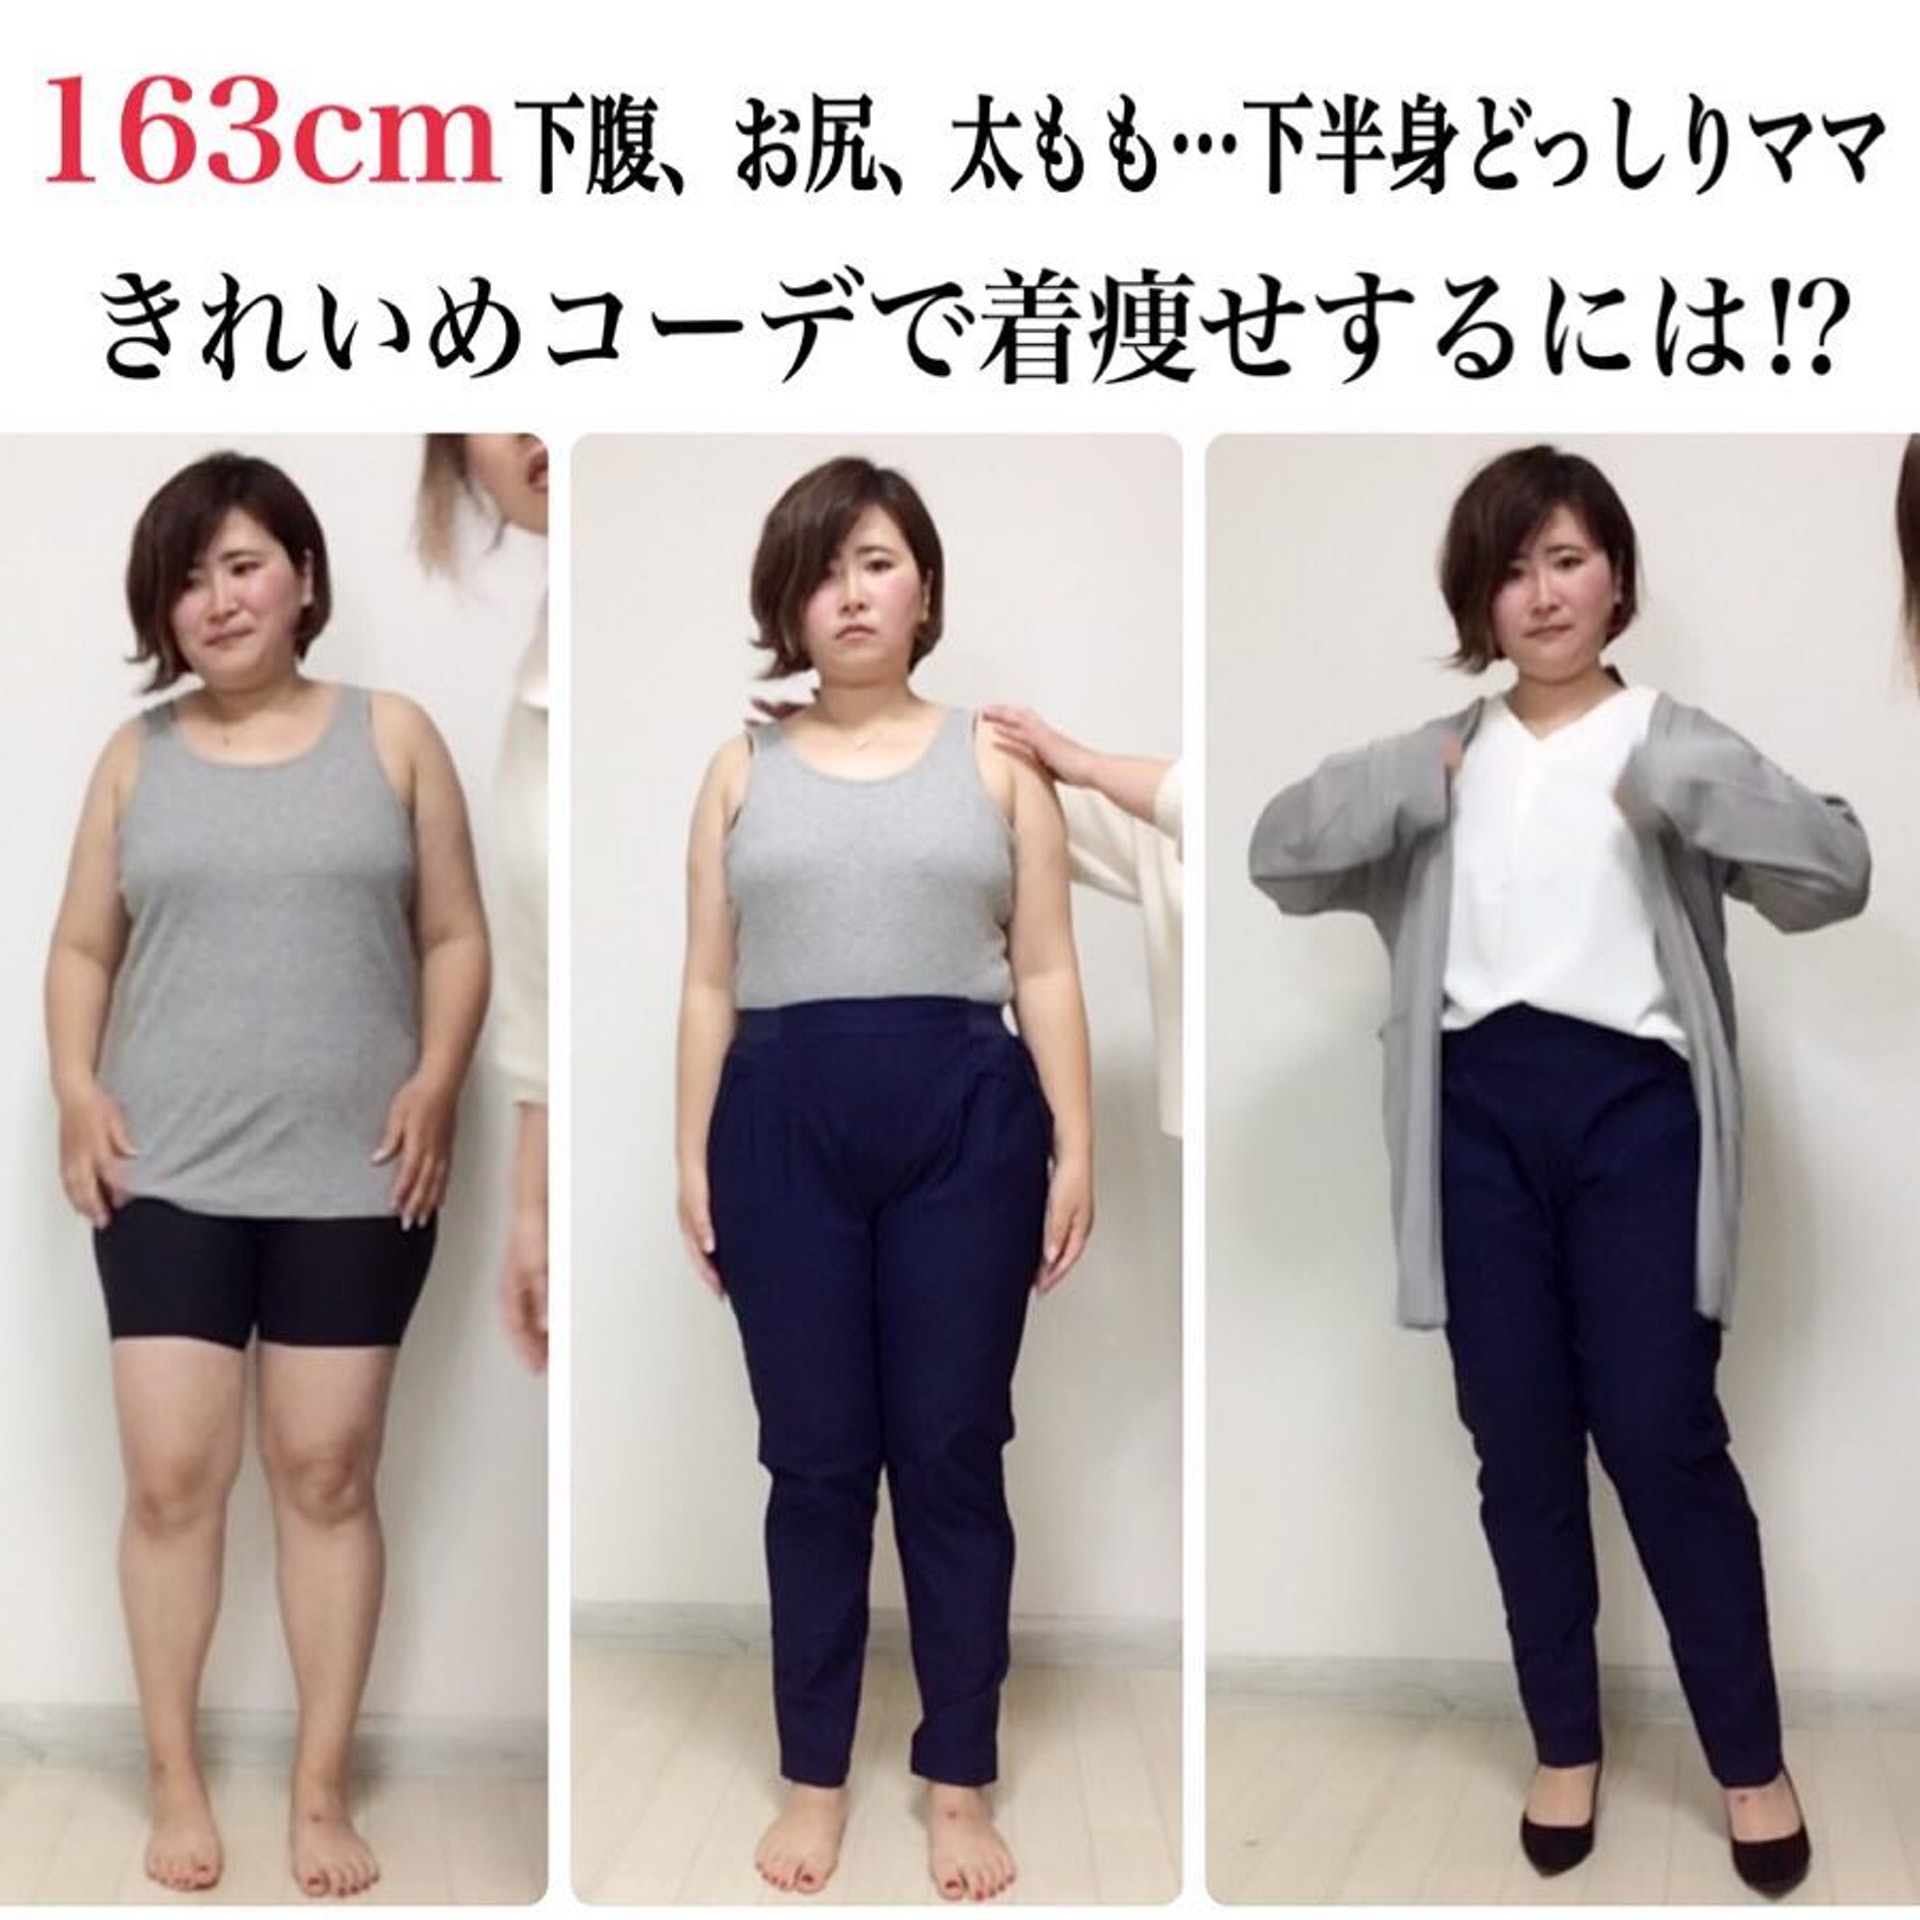 這位身高163cm的女生擁有下半身肥胖的問題，加上長外套後身形比例大大改善。（IG＠kinglilydesigner ）